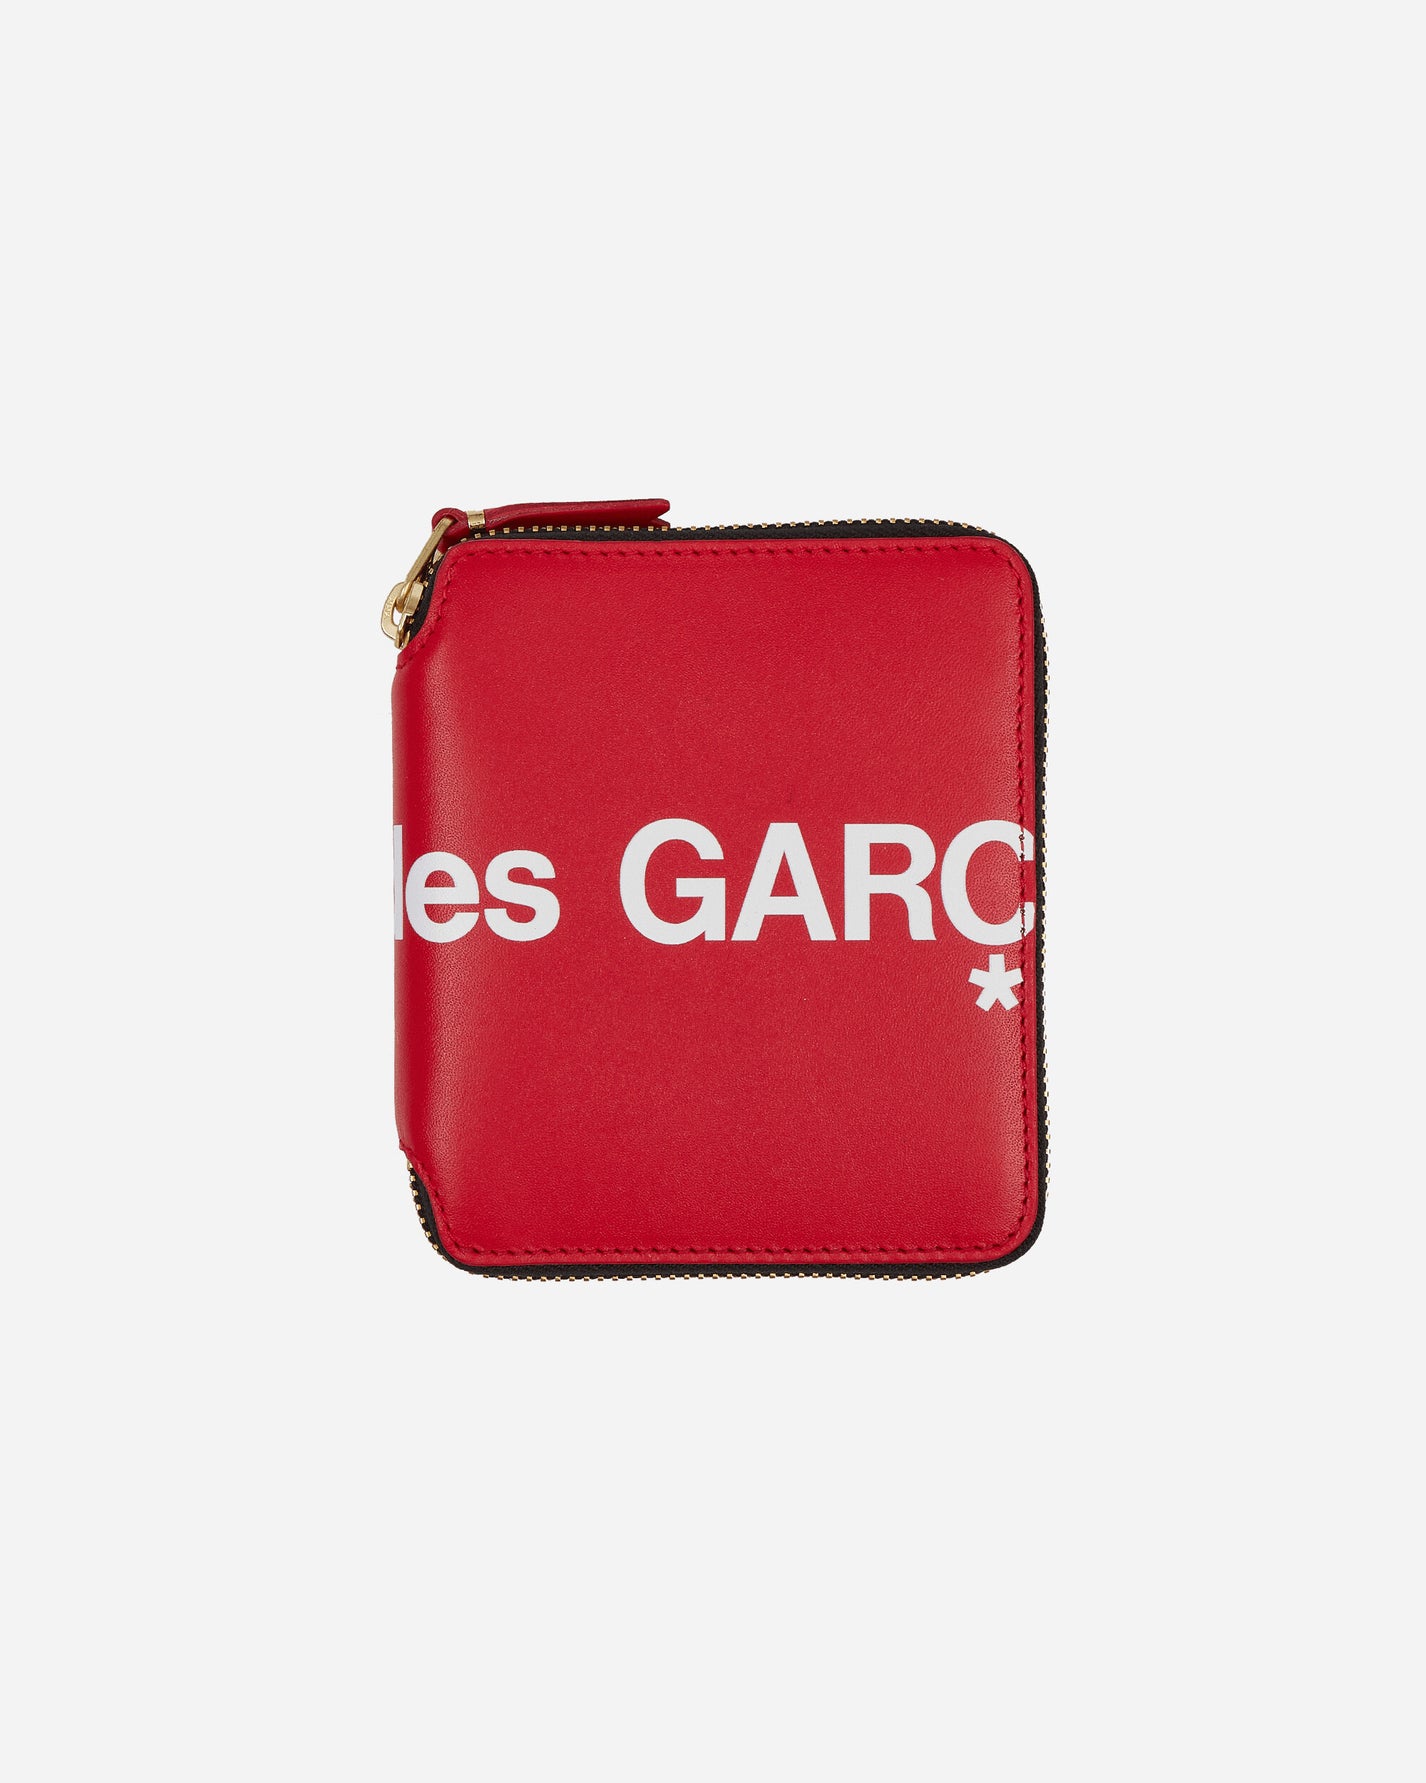 Comme Des Garçons Wallet Wallet/Huge Logo Red Wallets and Cardholders Wallets SA2100HL 2